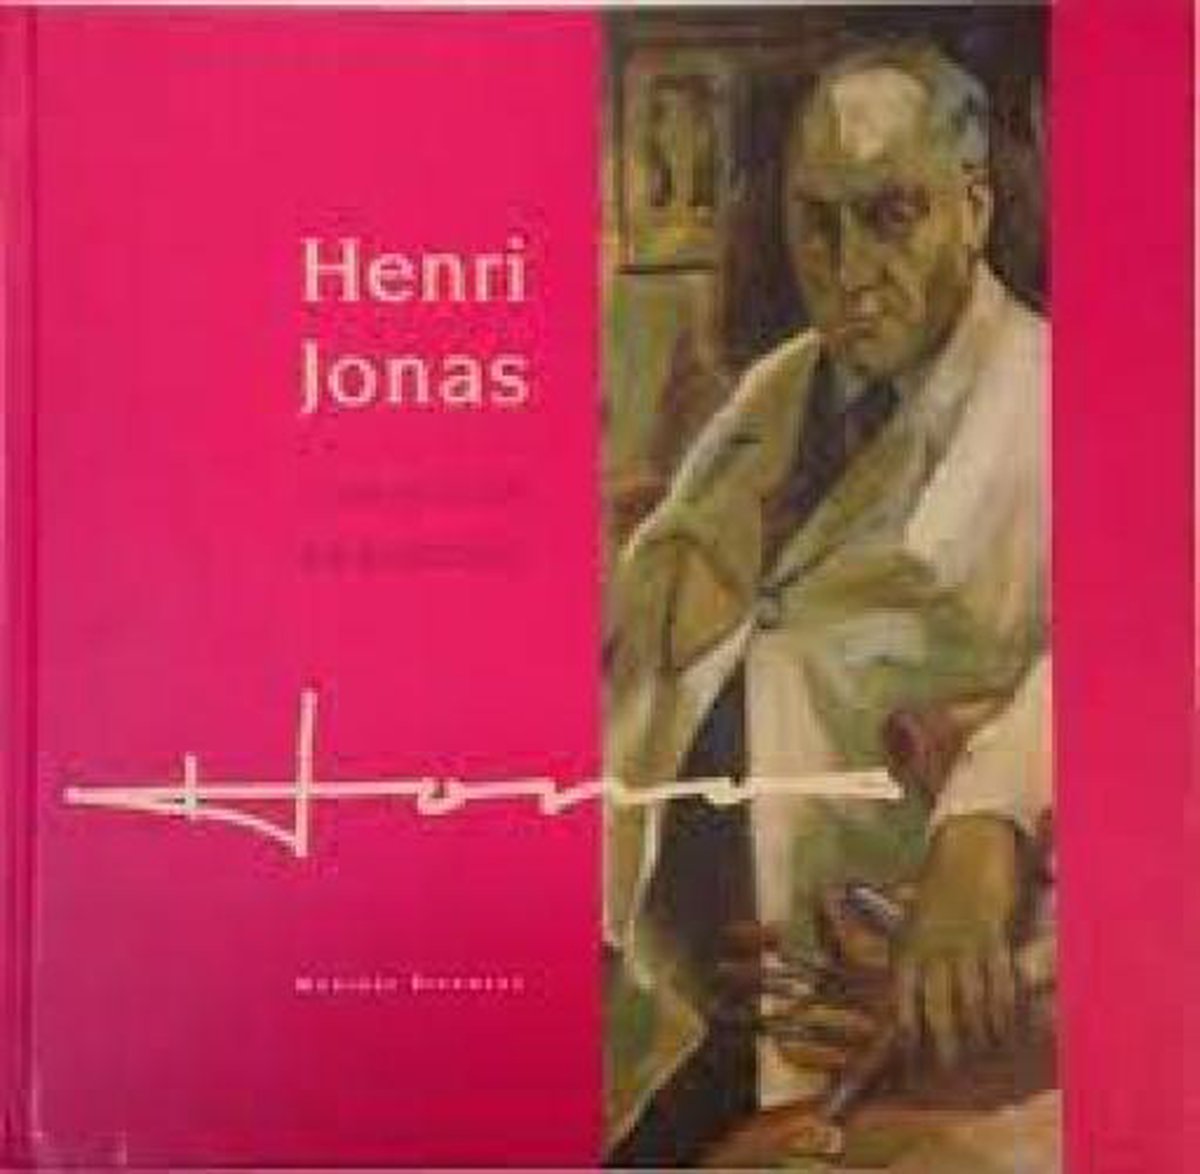 Henri Jonas (1878-1944)